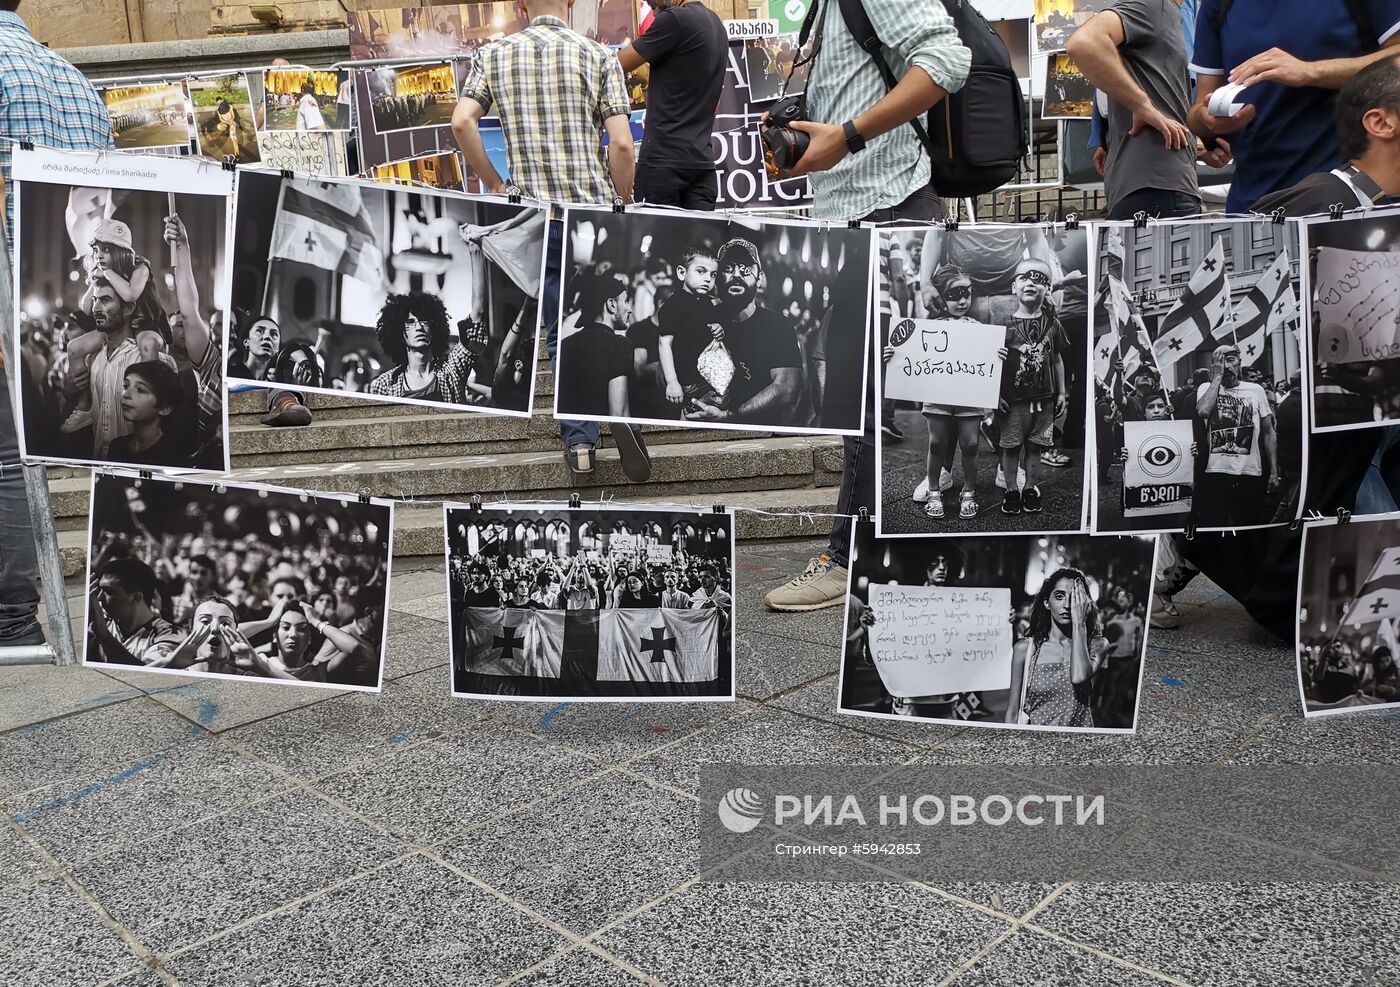 Акции протеста в Грузии